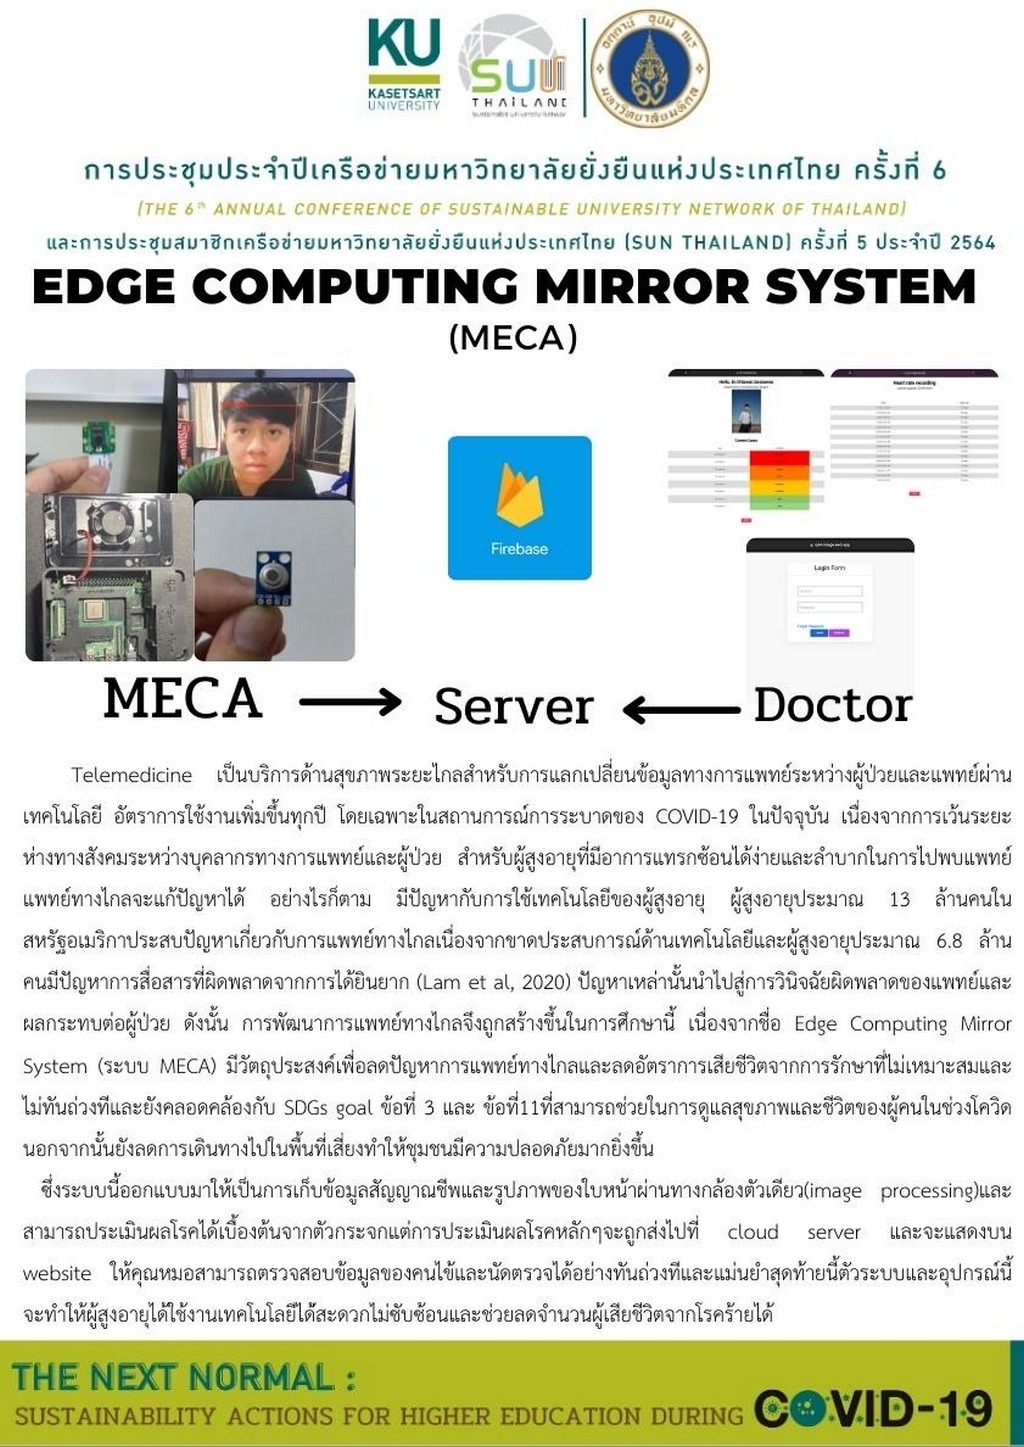 นักศึกษาคณะวิศวกรรมศาสตร์ ม.มหิดล คว้ารางวัลชนะเลิศ อันดับ 1 ด้วยผลงาน “Edge Computing Mirror System”